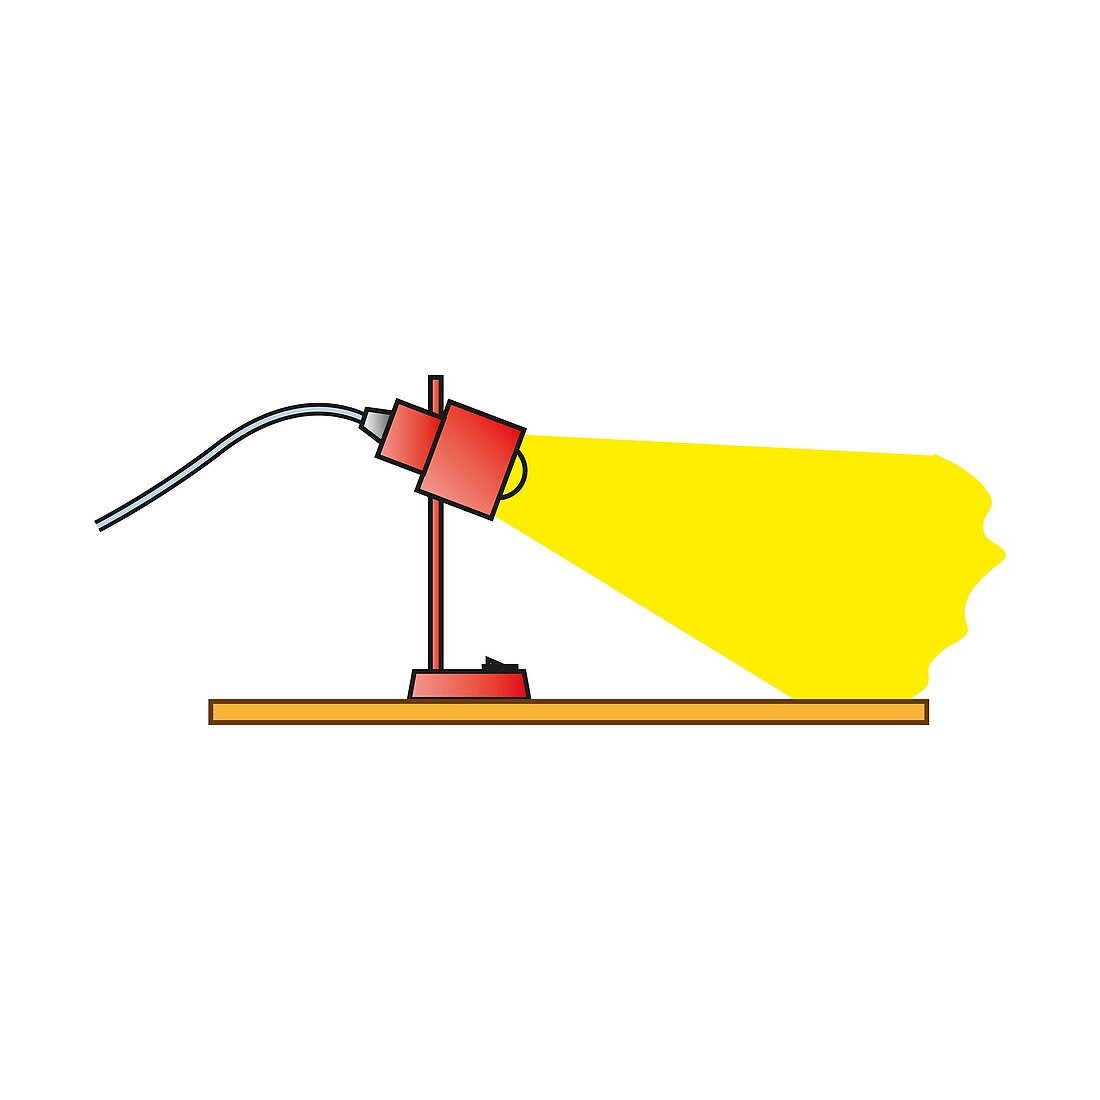 Lamp, illustration